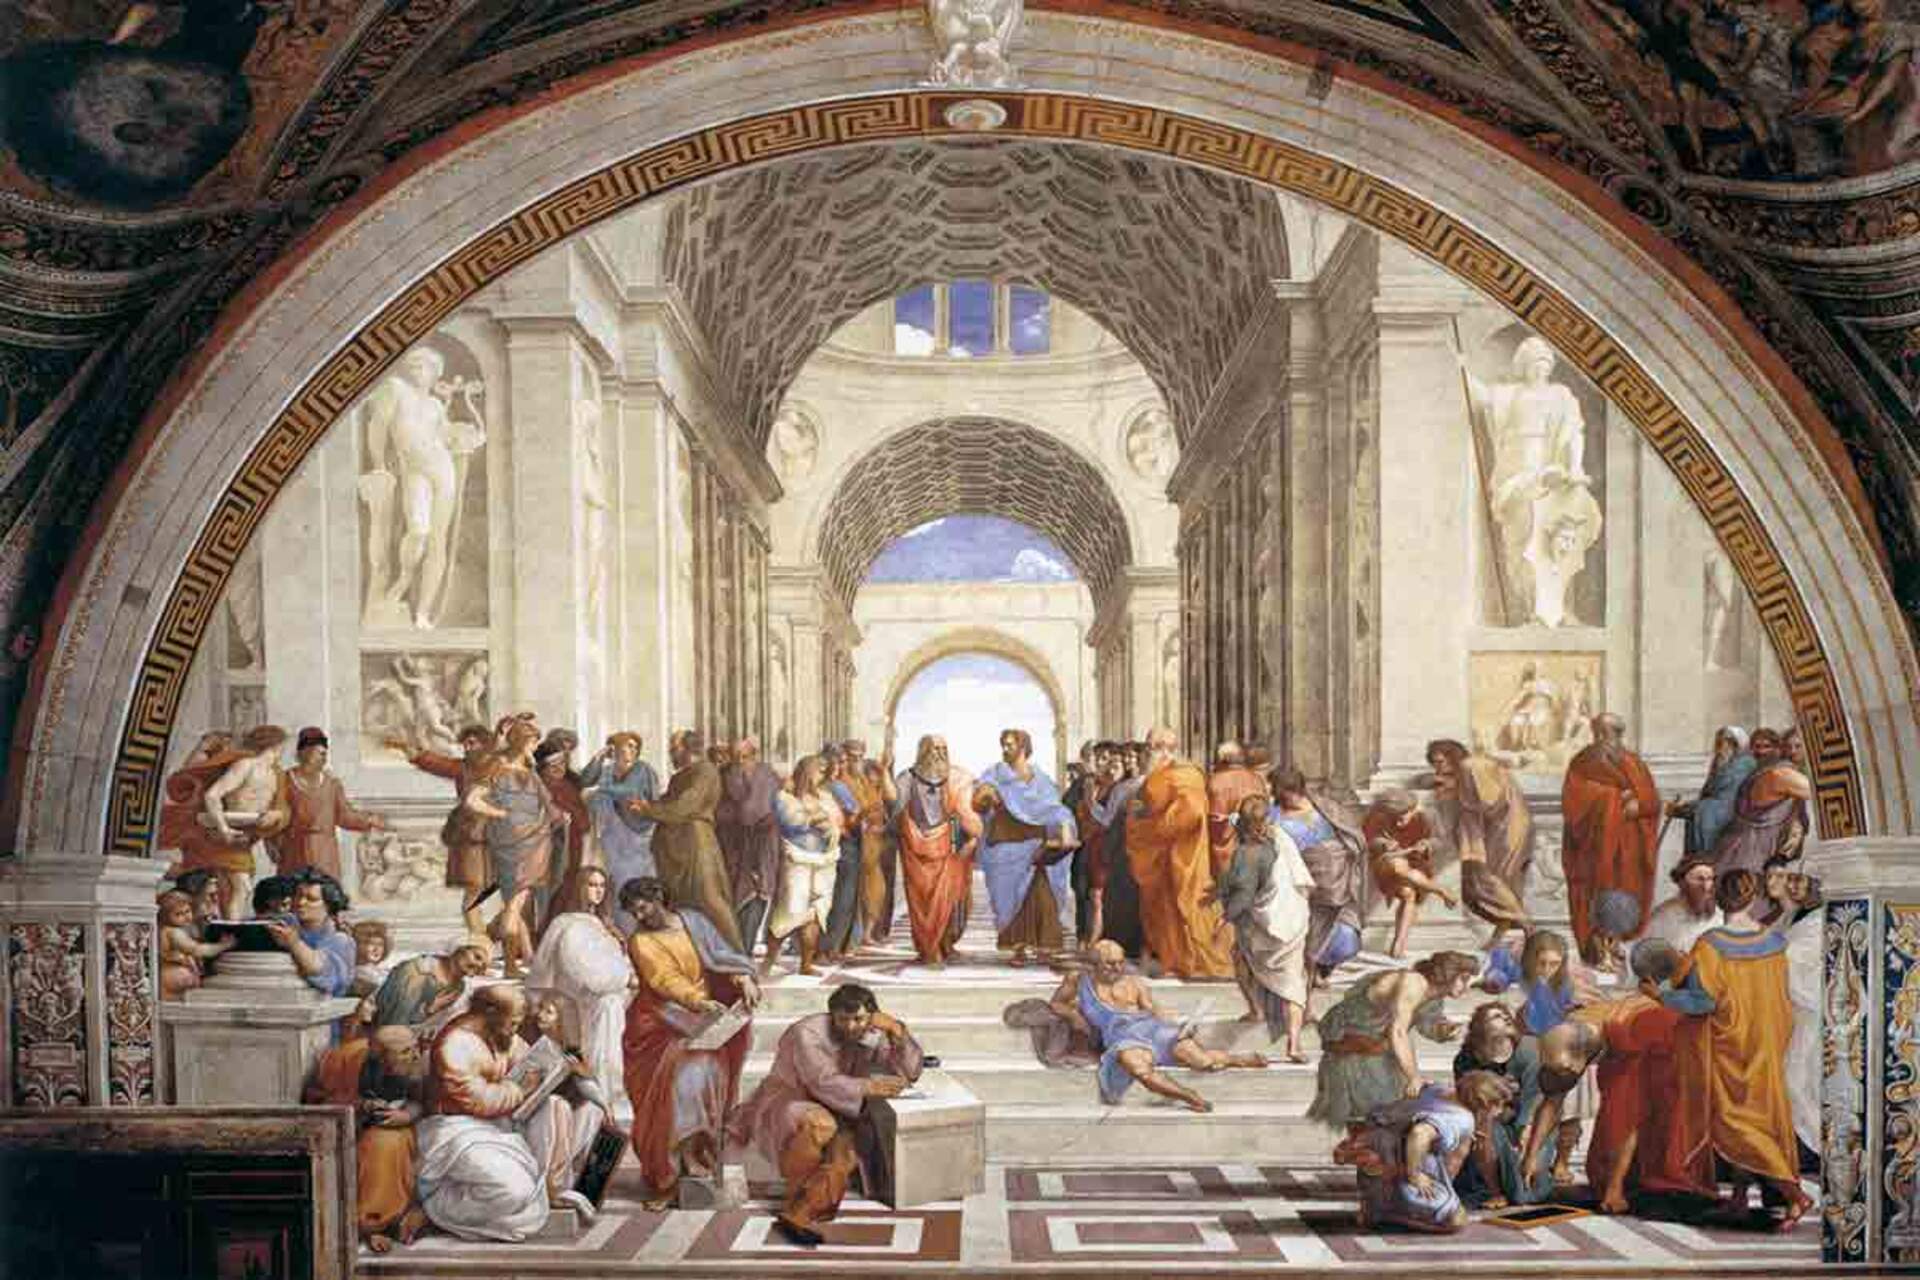 Relazioni Pubbliche: la “Scuola di Atene” di Raffaello Sanzio nei Palazzi Apostolici Vaticani